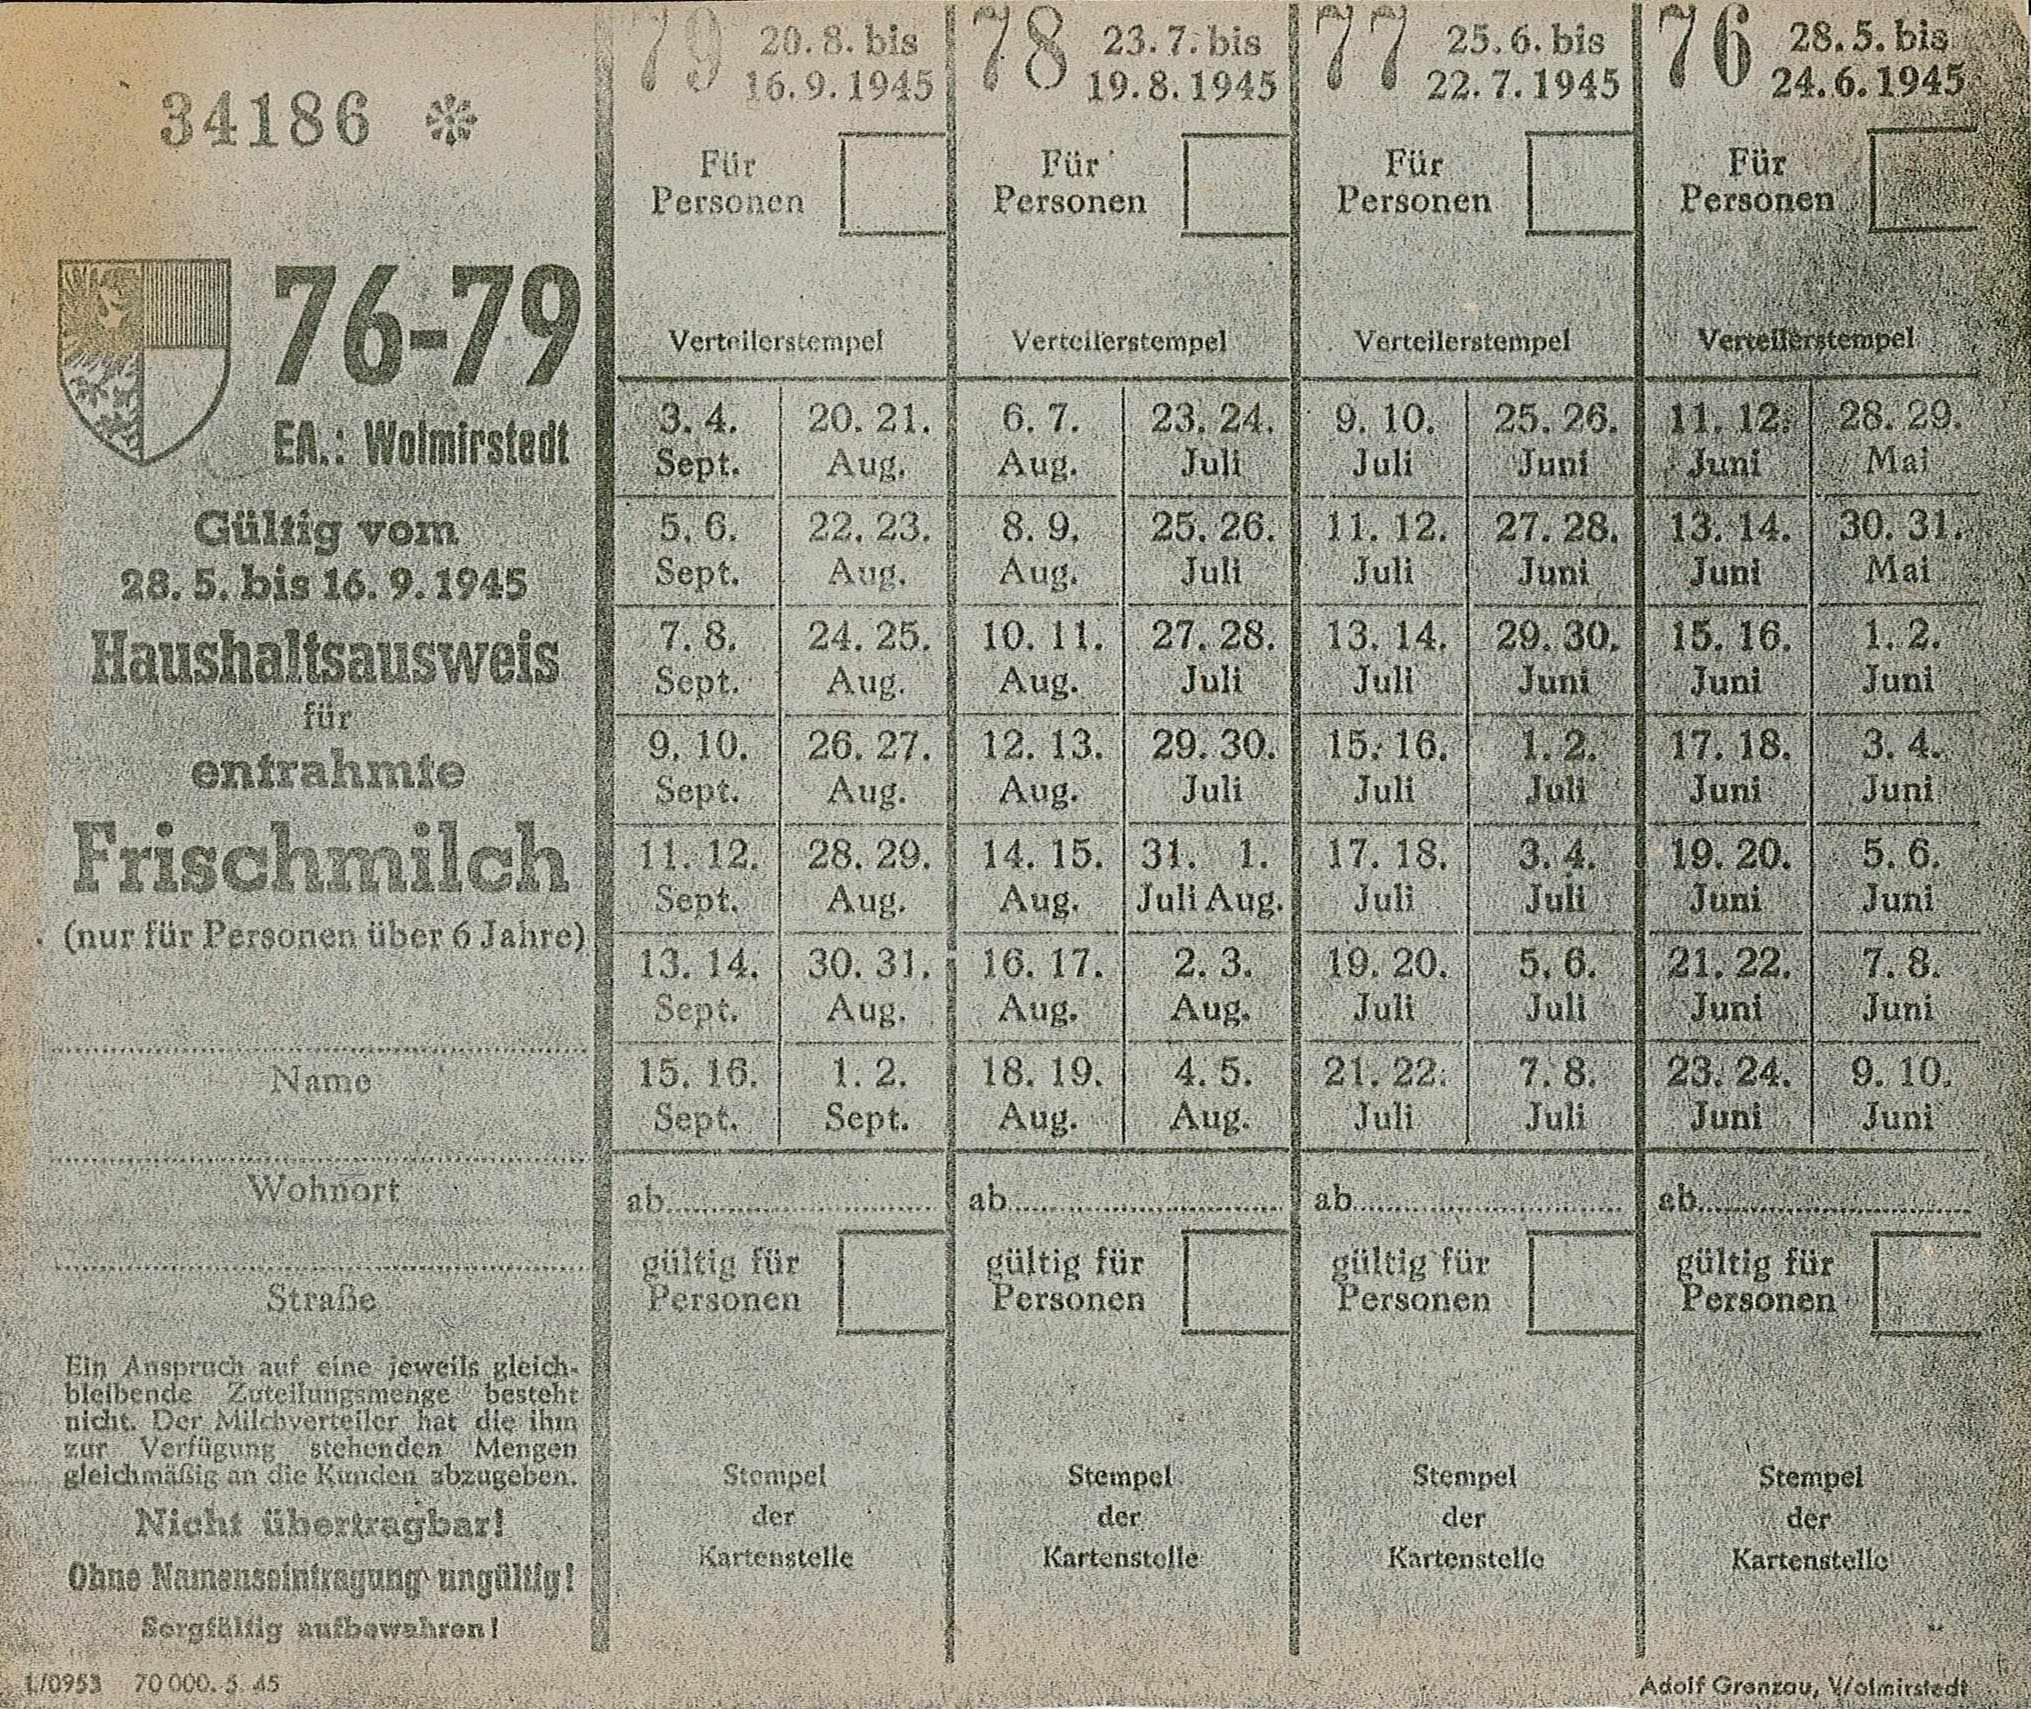 Lebensmittelkarte: Haushaltsausweis für entrahmte Frischmilch (Museum Wolmirstedt RR-F)